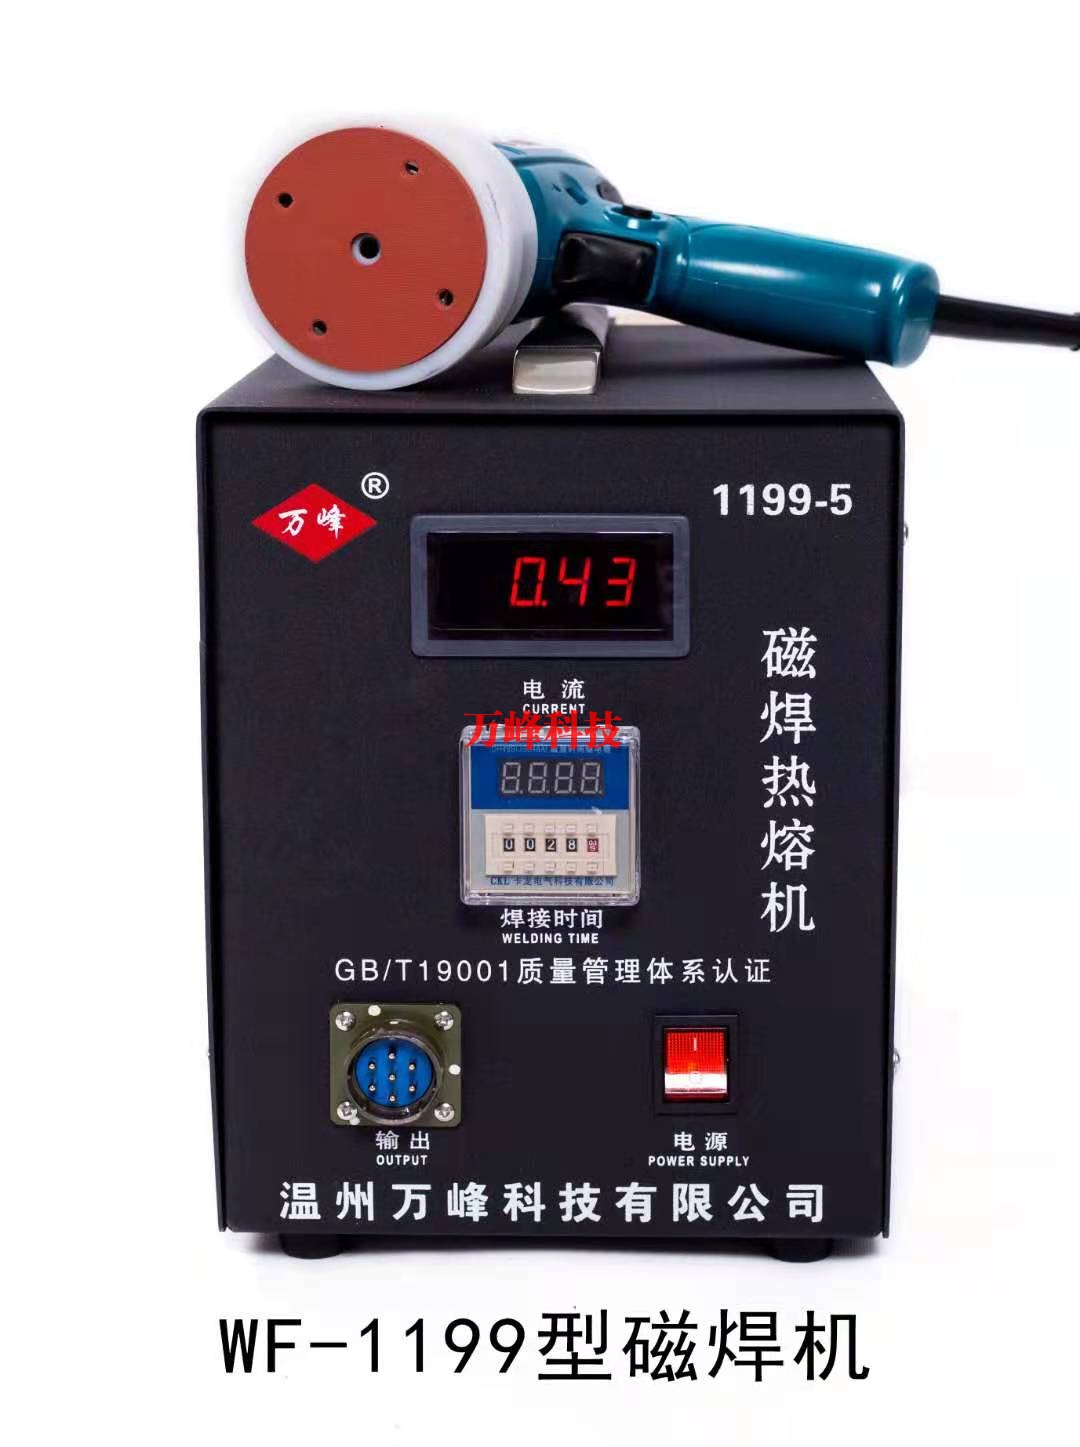 北京WF-1199型磁焊热熔机